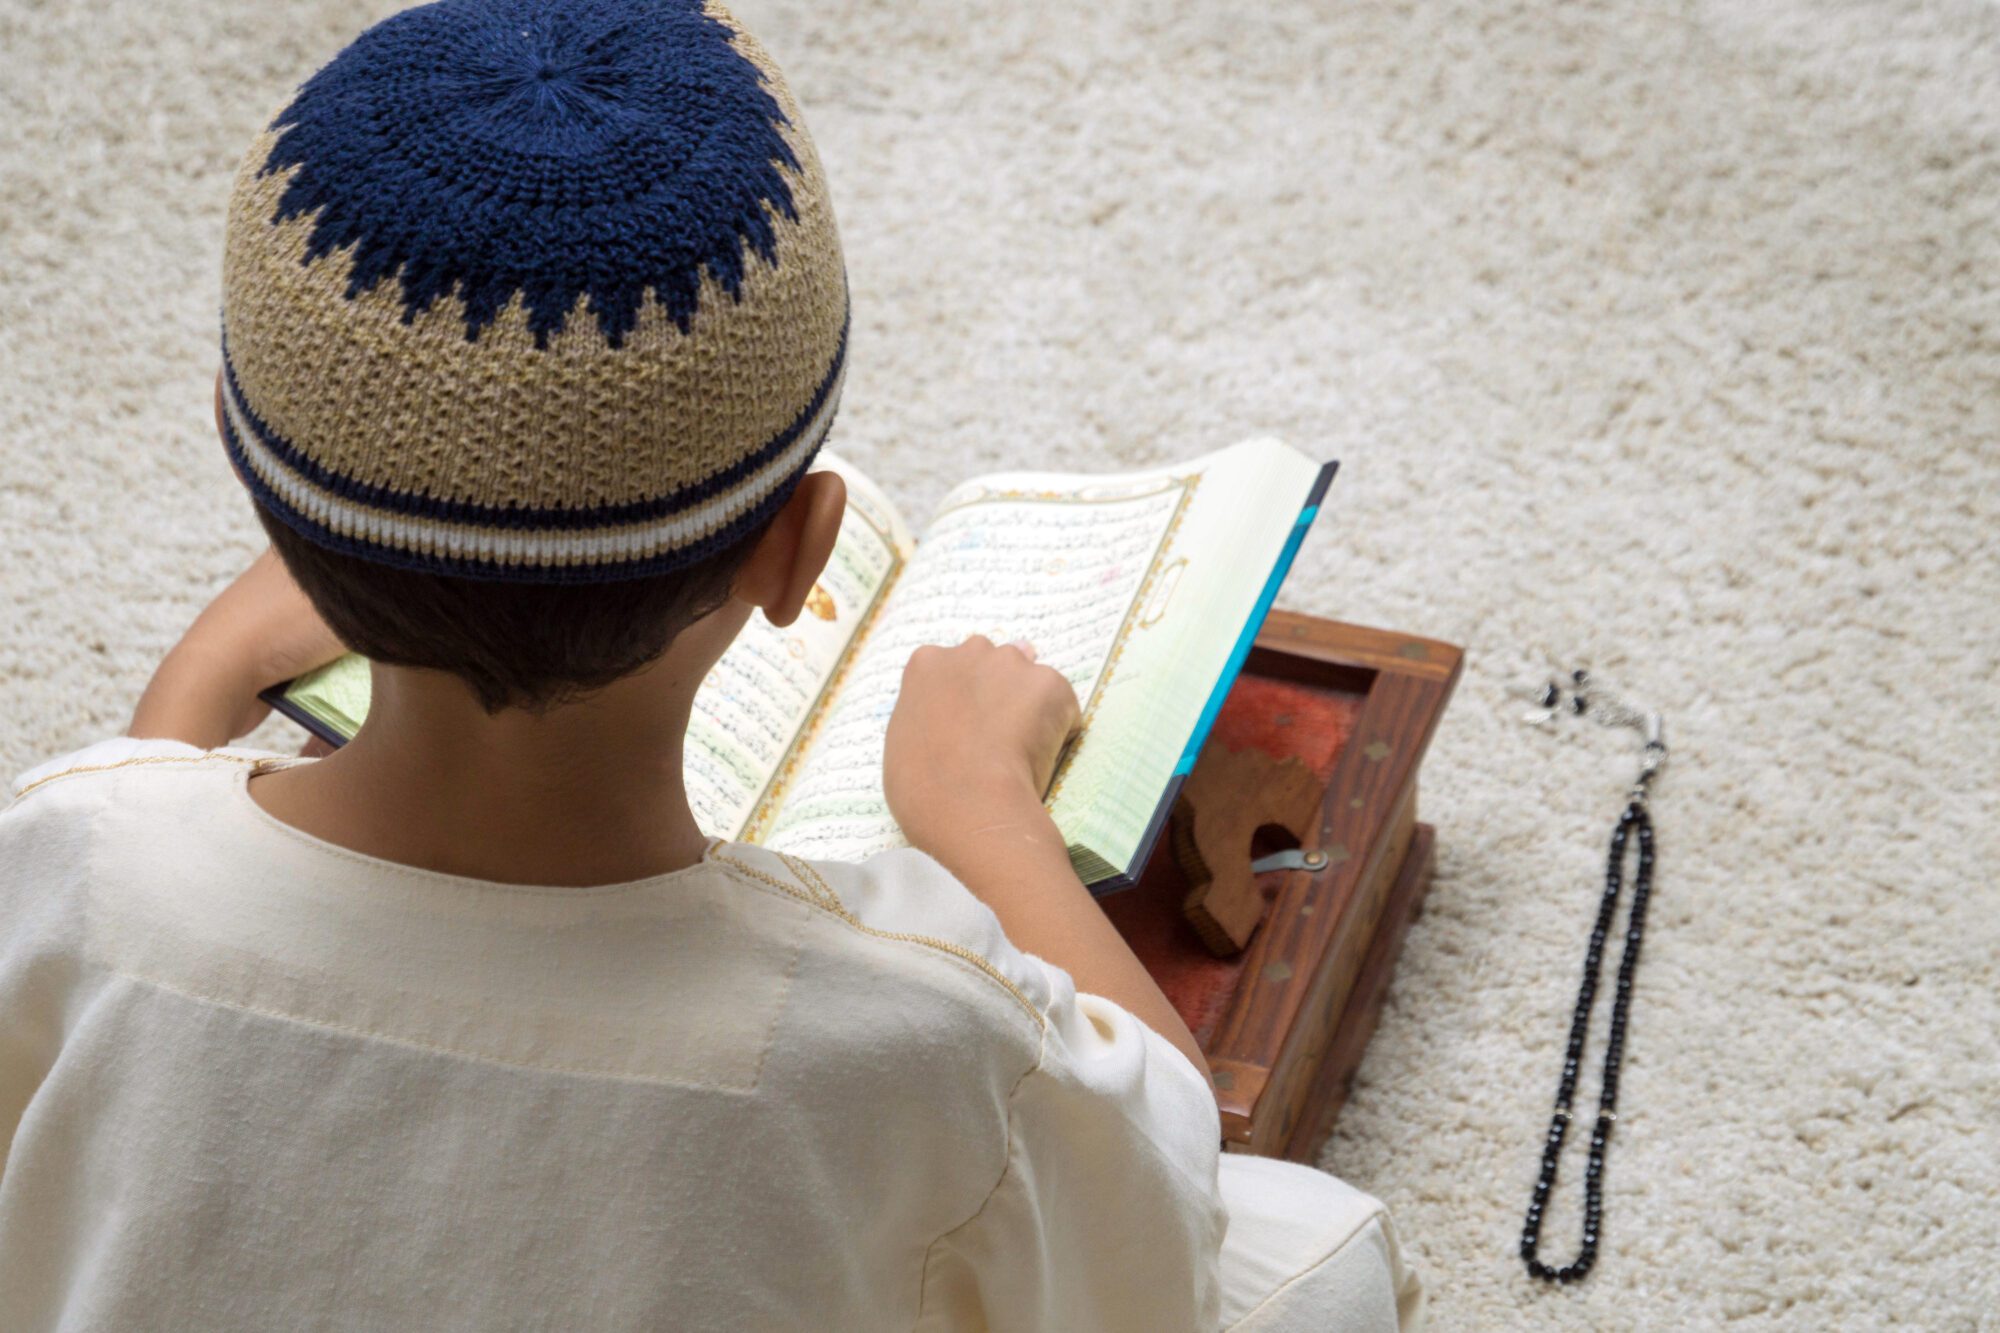 Мусульманских чтение. Что читают мусульмане. Юный мусульманин. Шапка мусульман. Дети читают Коран.